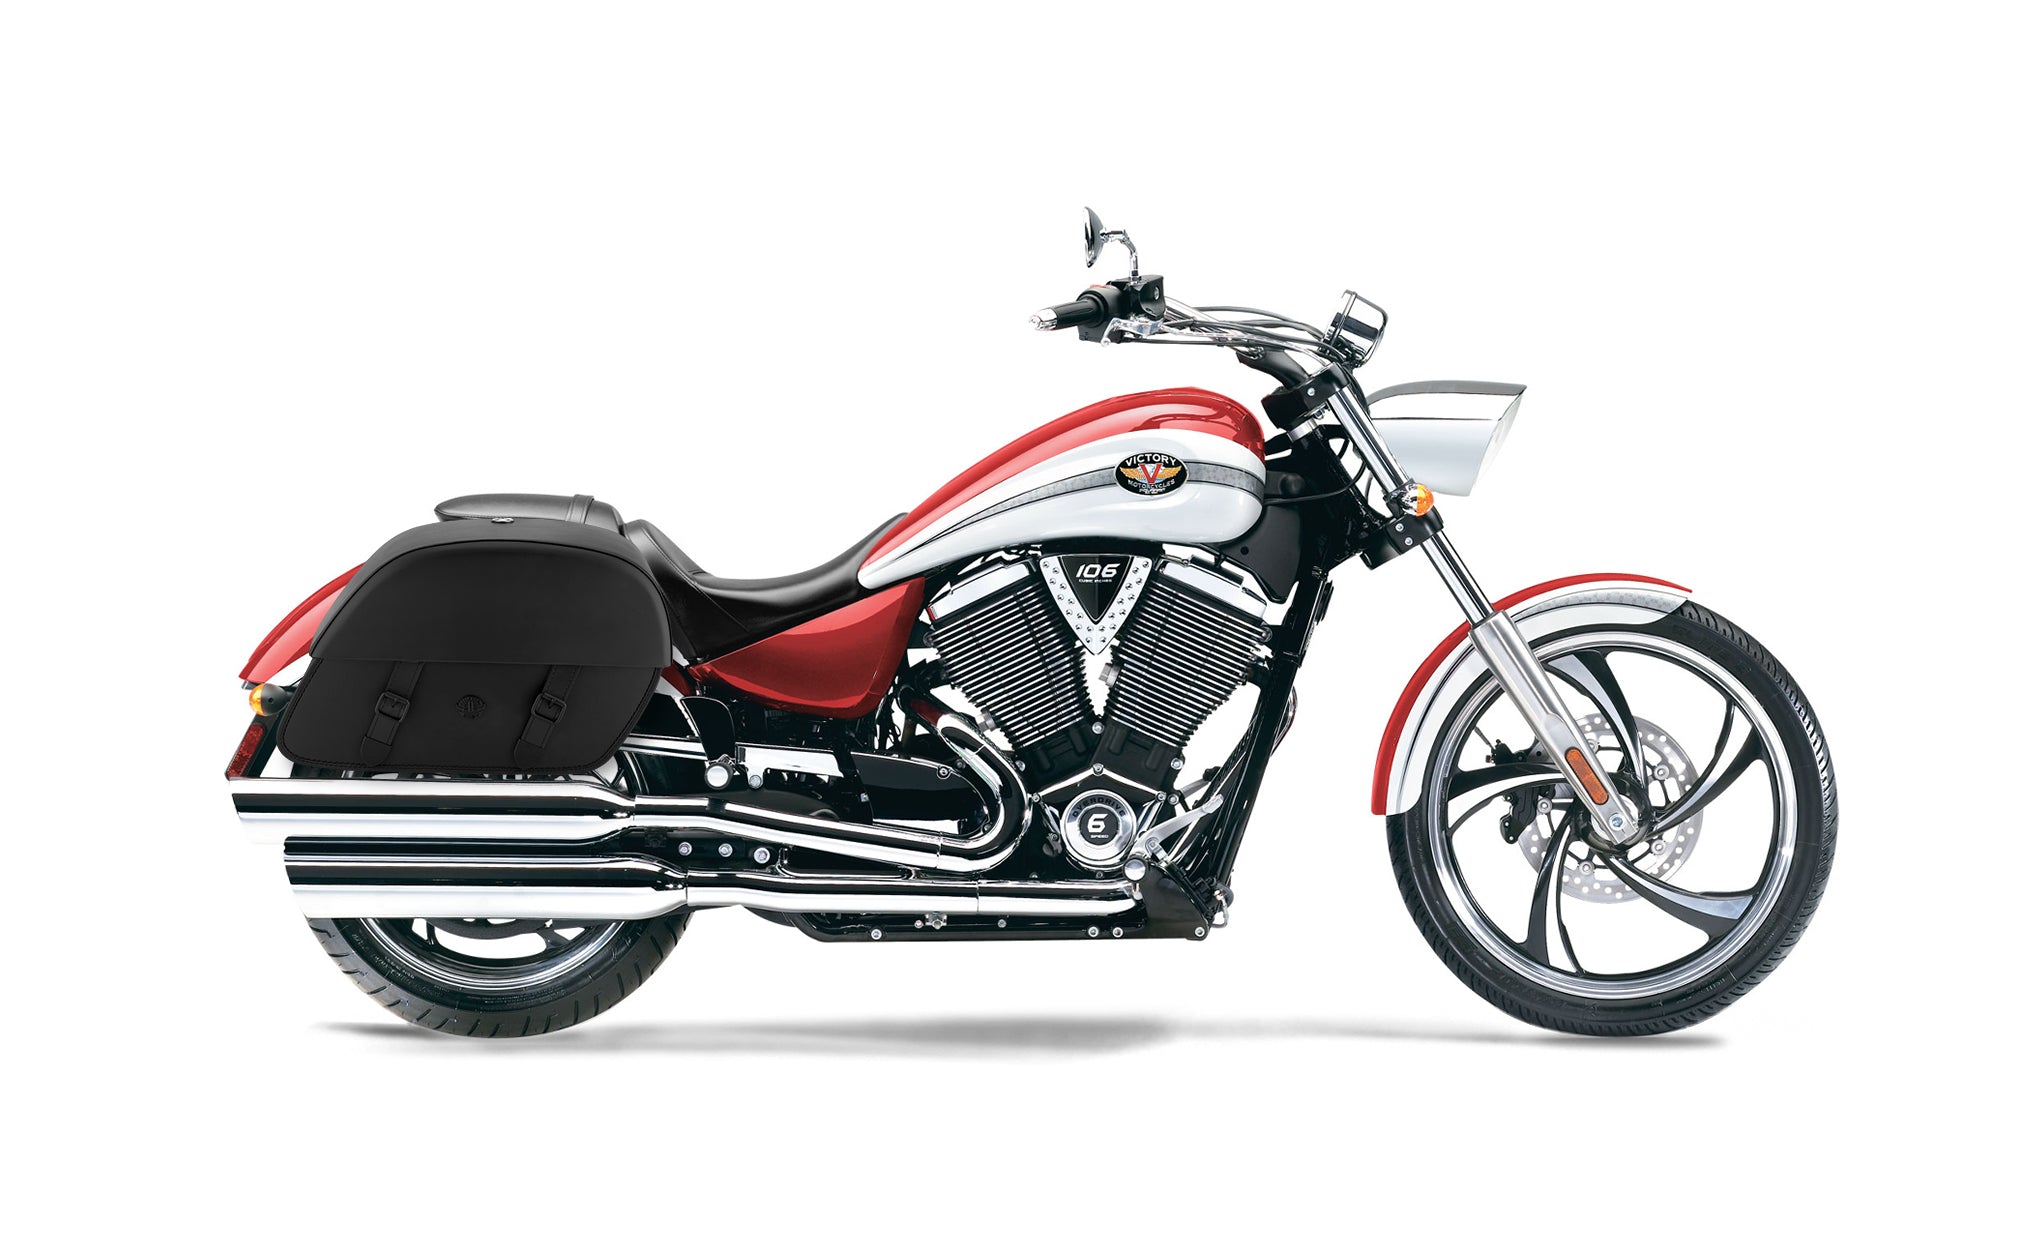 Viking Baelor Large Victory Vegas Leather Motorcycle Saddlebags on Bike Photo @expand